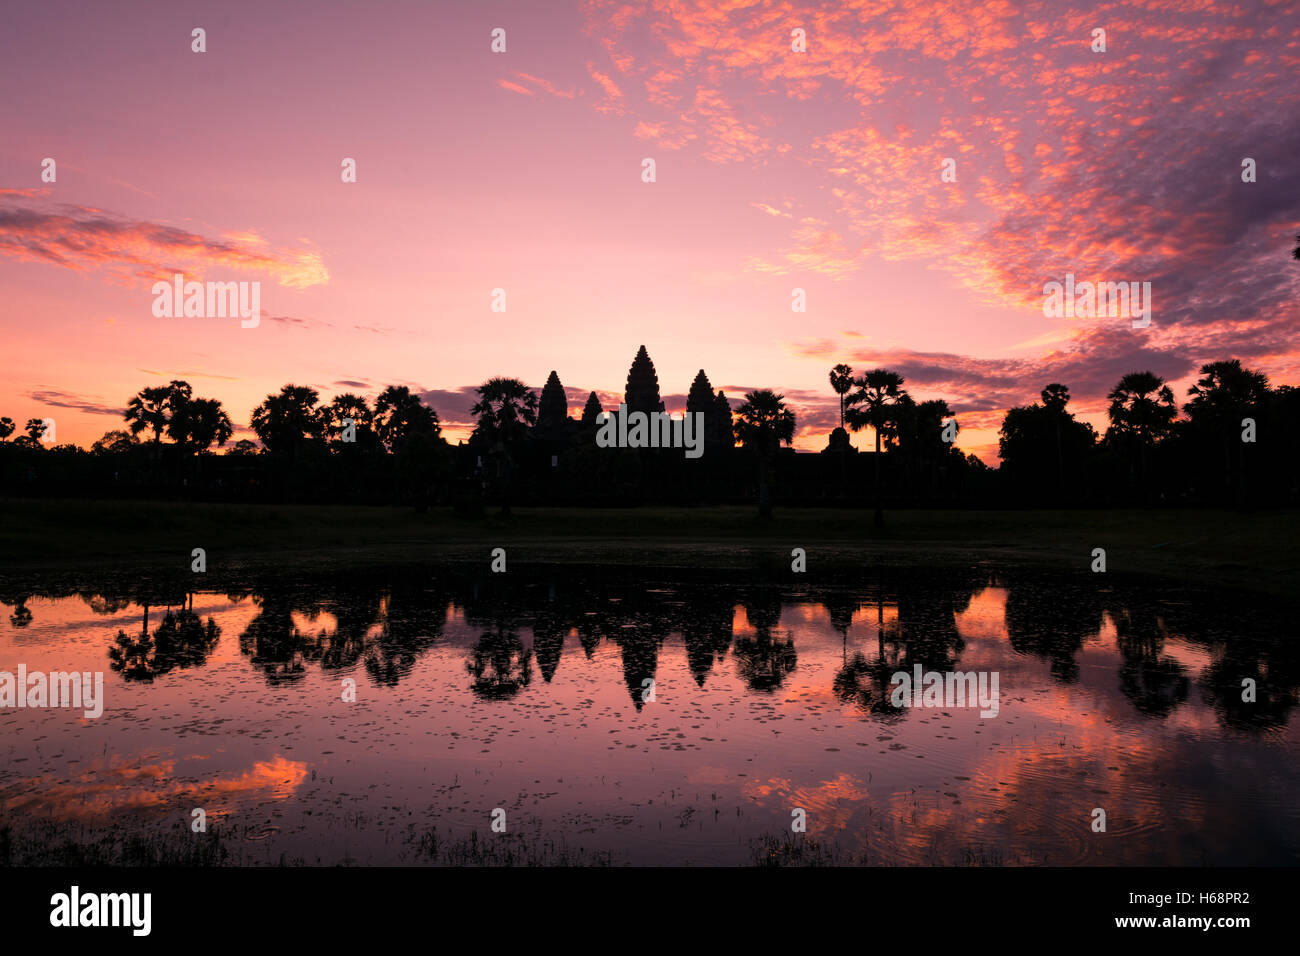 Angkor Wat Sunrise Landscape - Reflection in holy lake Stock Photo